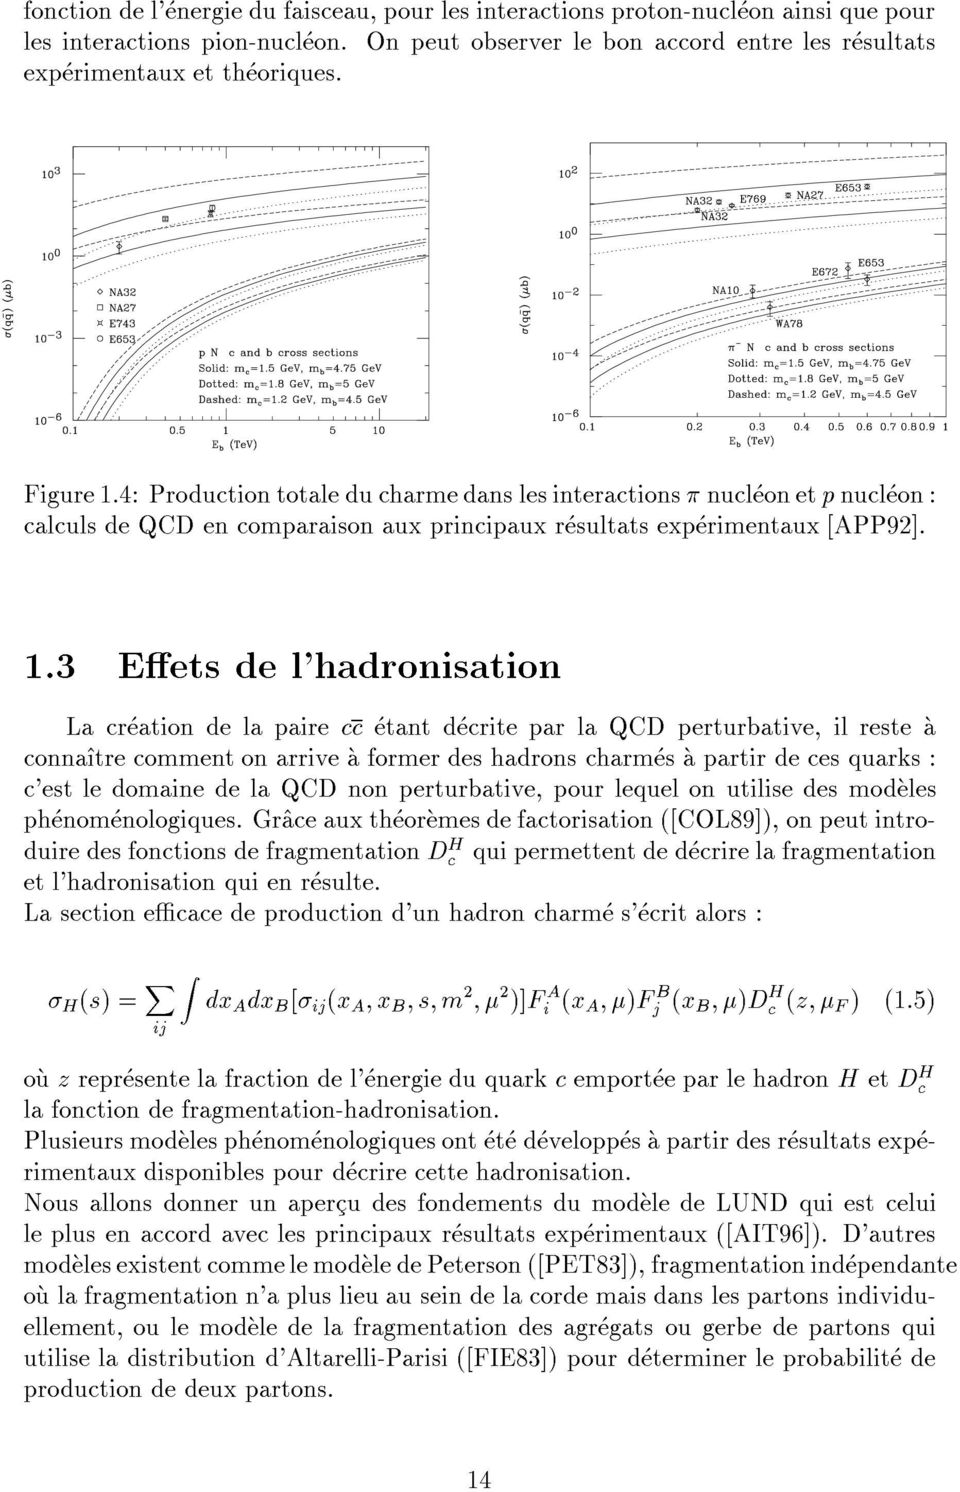 4: Production totale du charme dans les interactions nucleon et p nucleon : calculs de QCD en comparaison aux principaux resultats experimentaux [APP92]. 1.